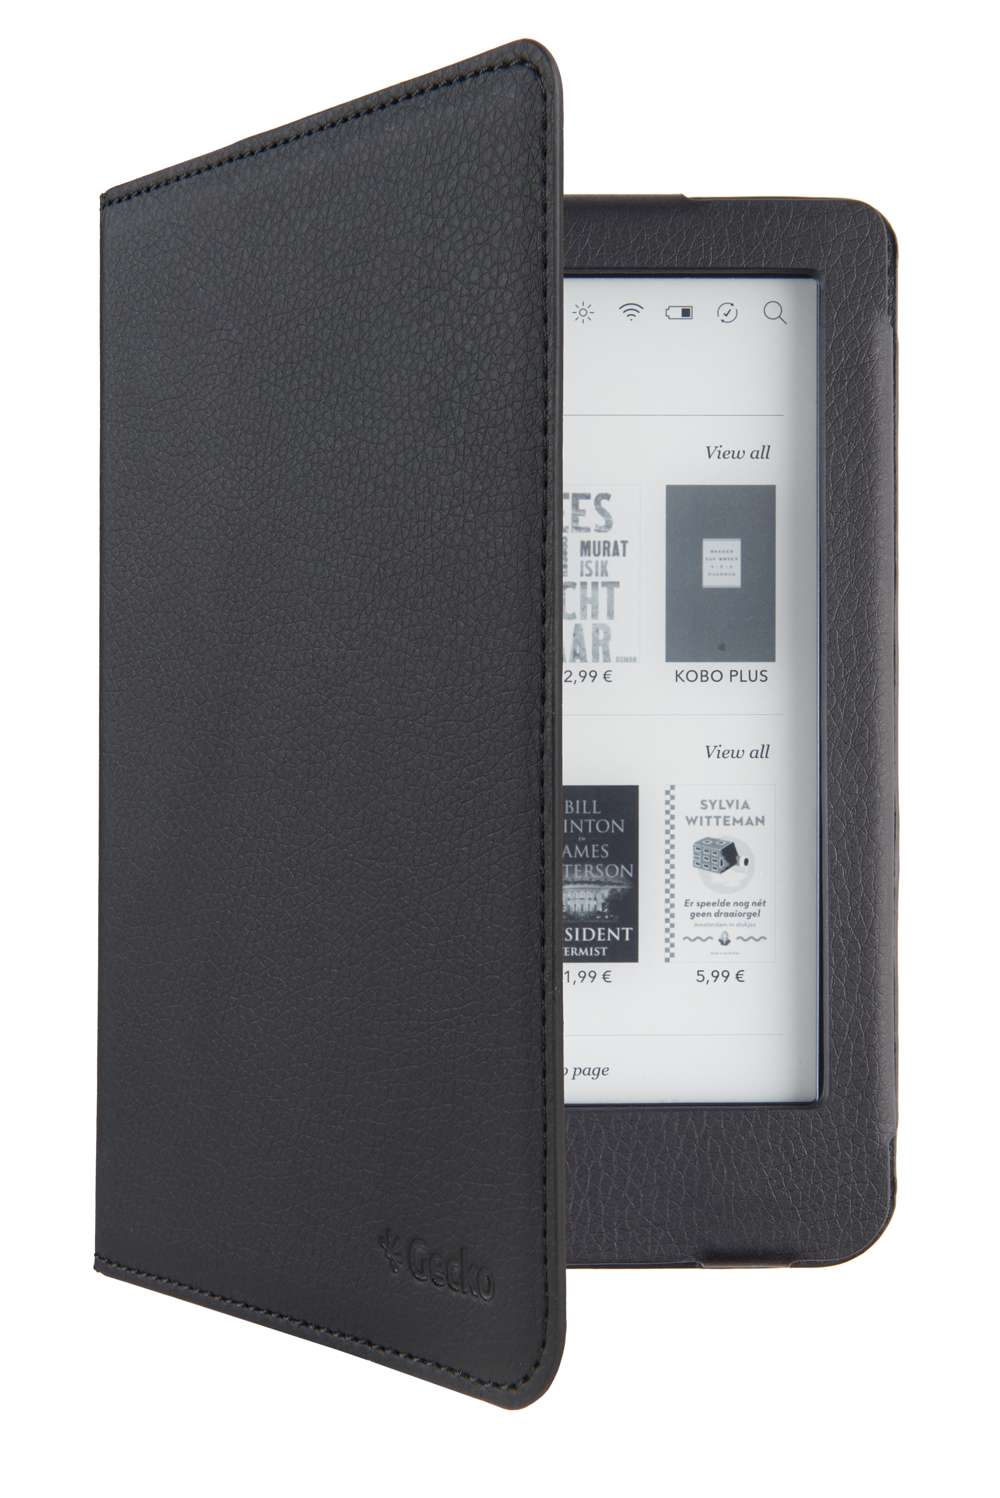 E-Reader case - Kobo Clara HD